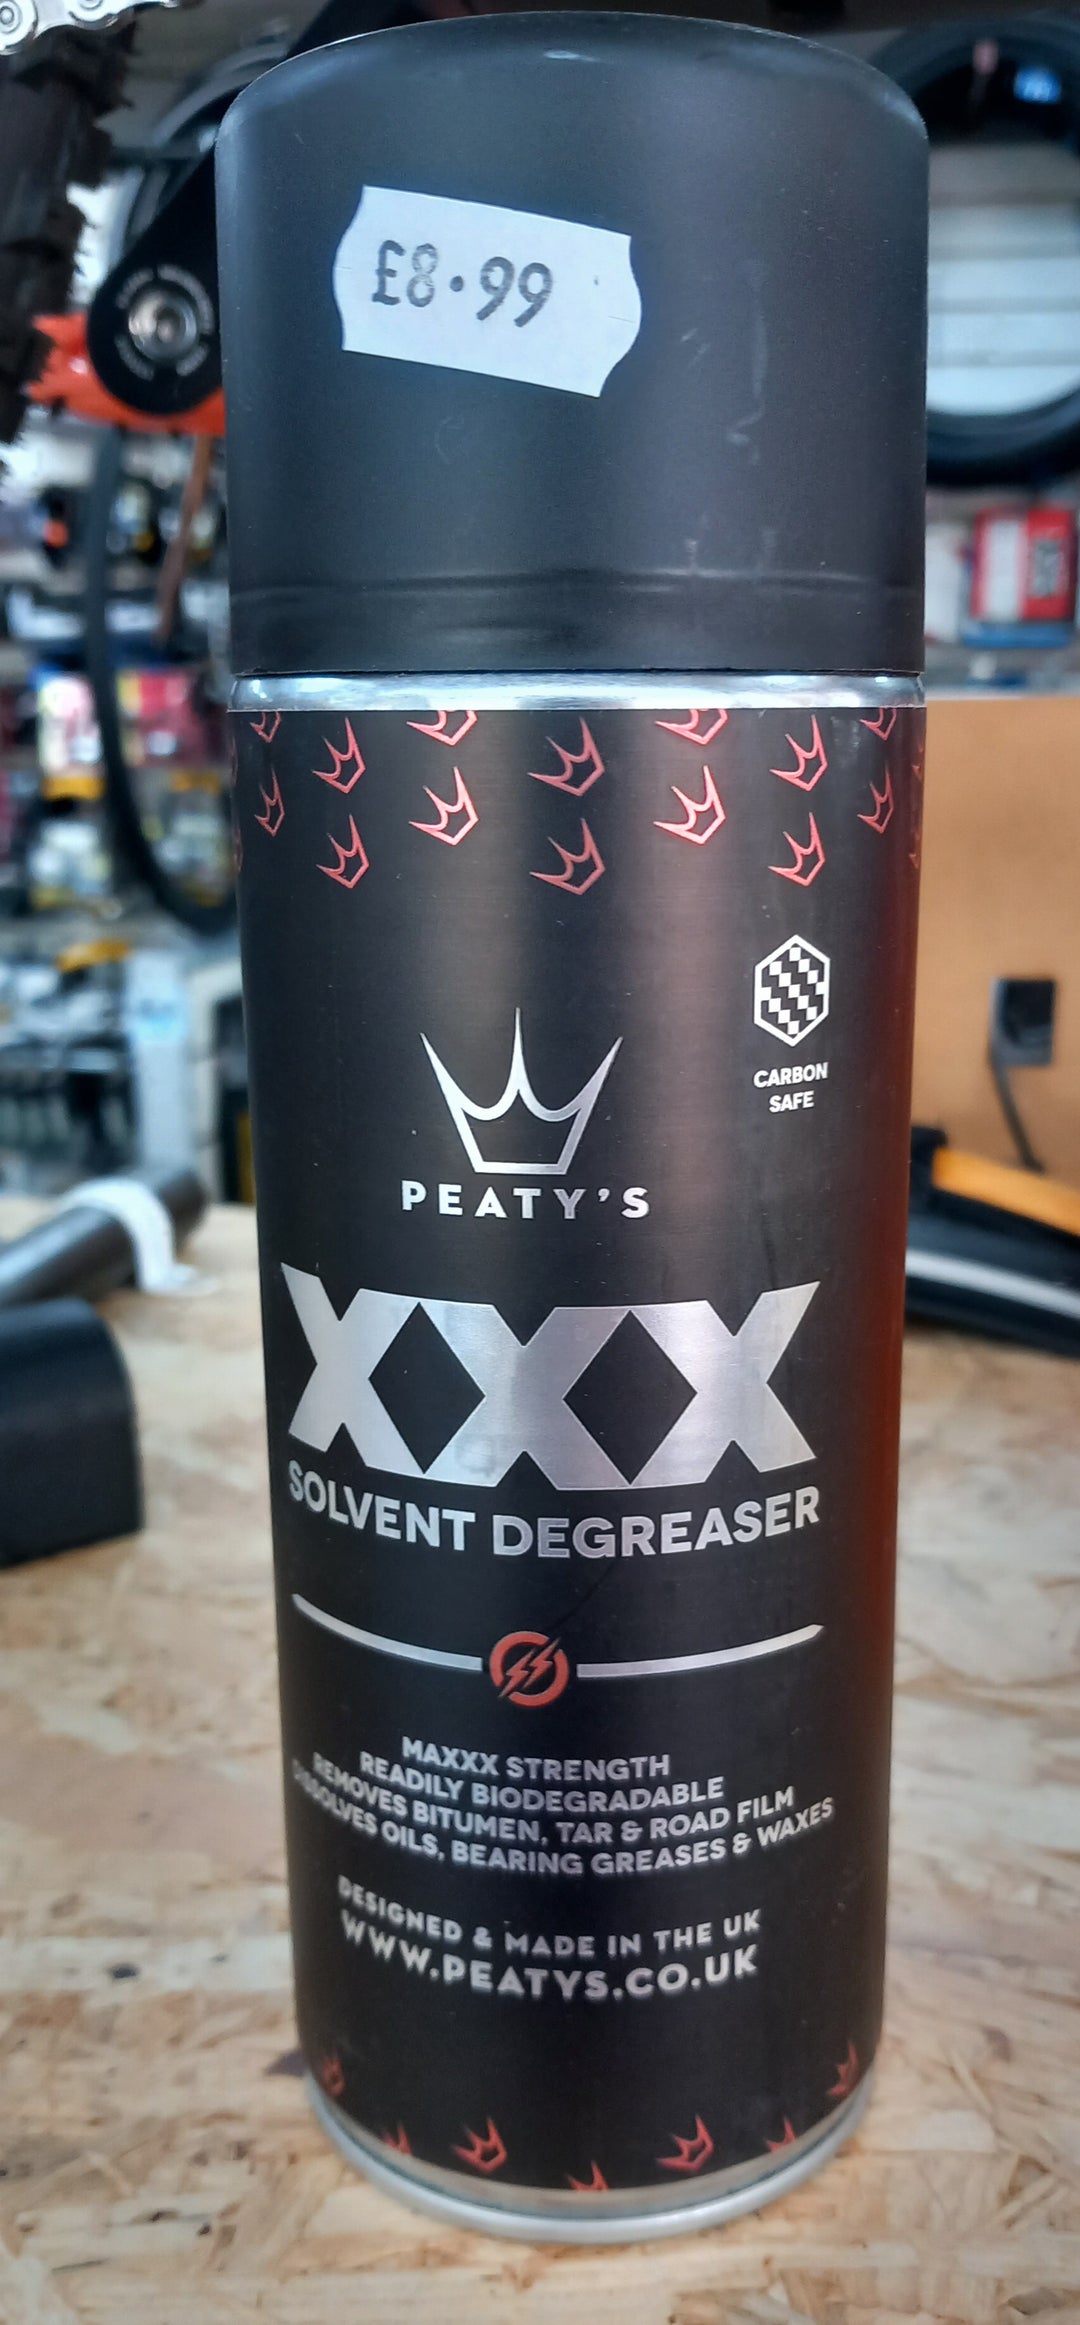 Peaty's XXX solvent degreaser